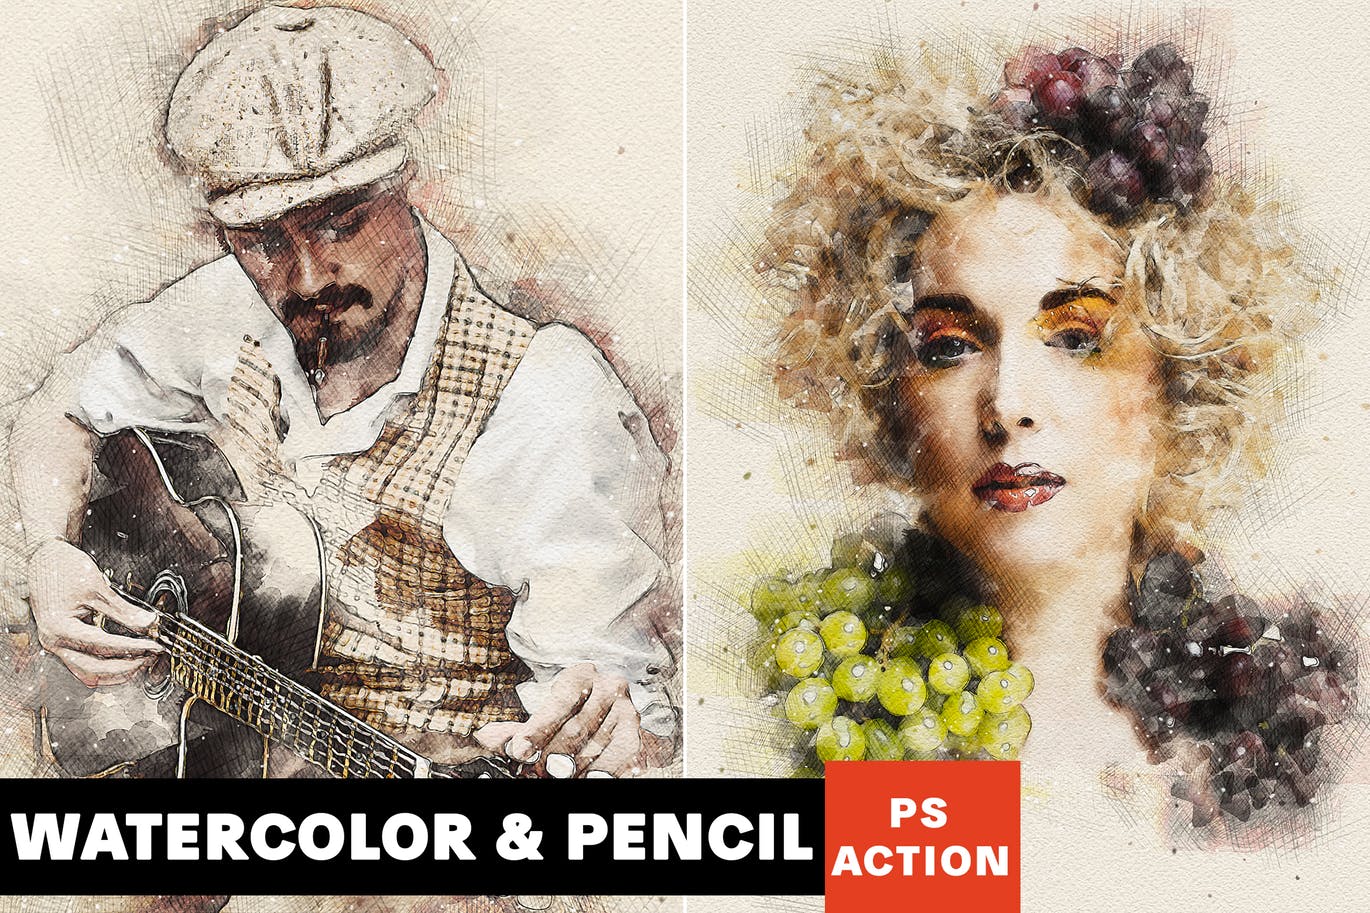 水彩/铅笔阴影素描艺术效果素材库精选PS动作 Watercolor & Pencil Photoshop Action插图